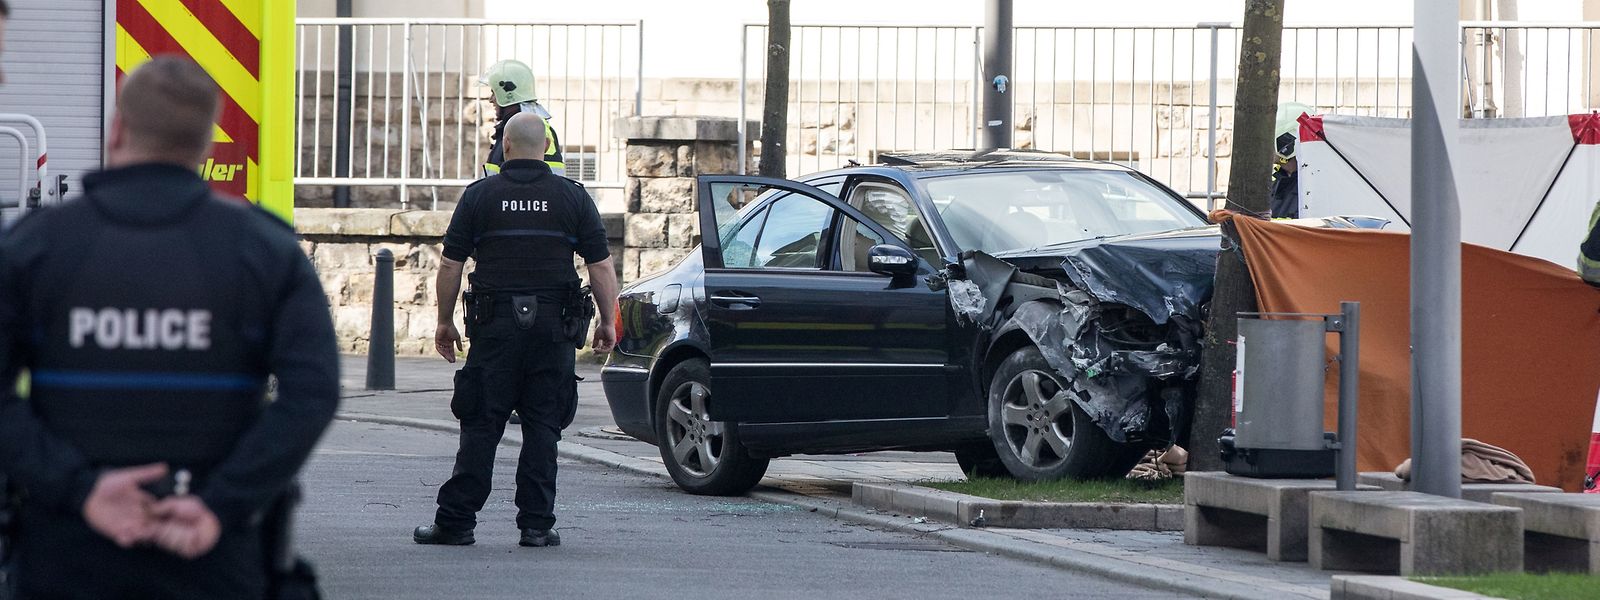 Am 11. April 2018 erschießt ein Polizist in Bonneweg einen flüchtenden Autofahrer.